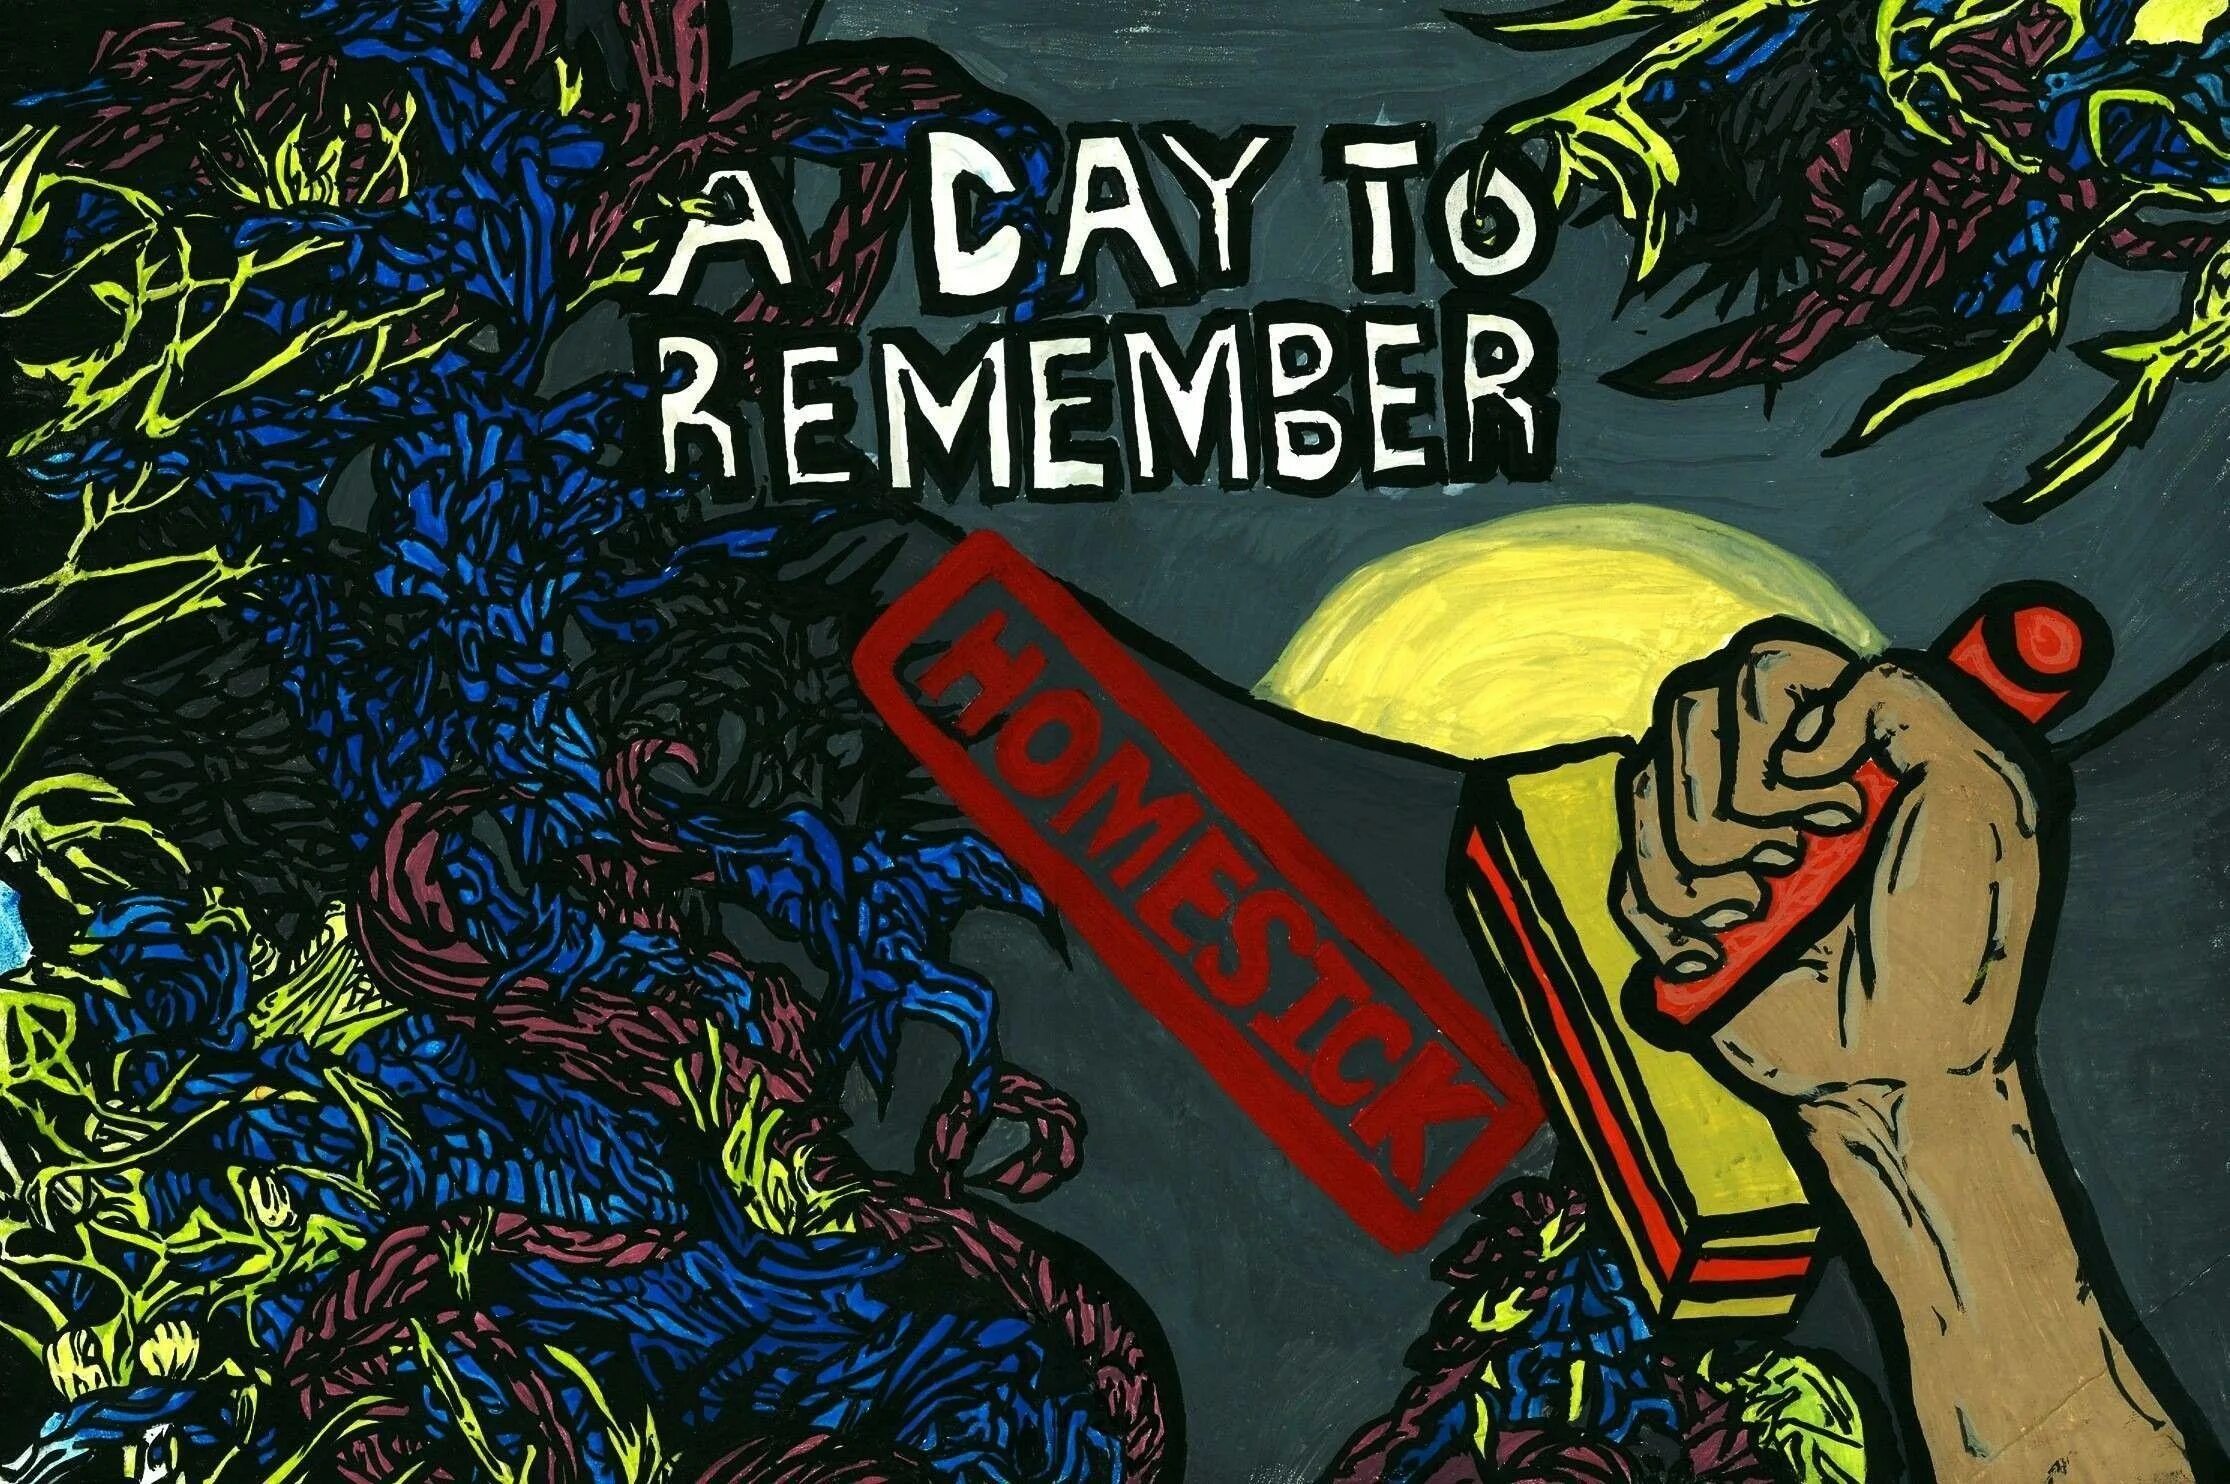 Holiday to remember. A Day to remember. A Day to remember логотип. Группа a Day to remember. A Day to remember обложка обои.